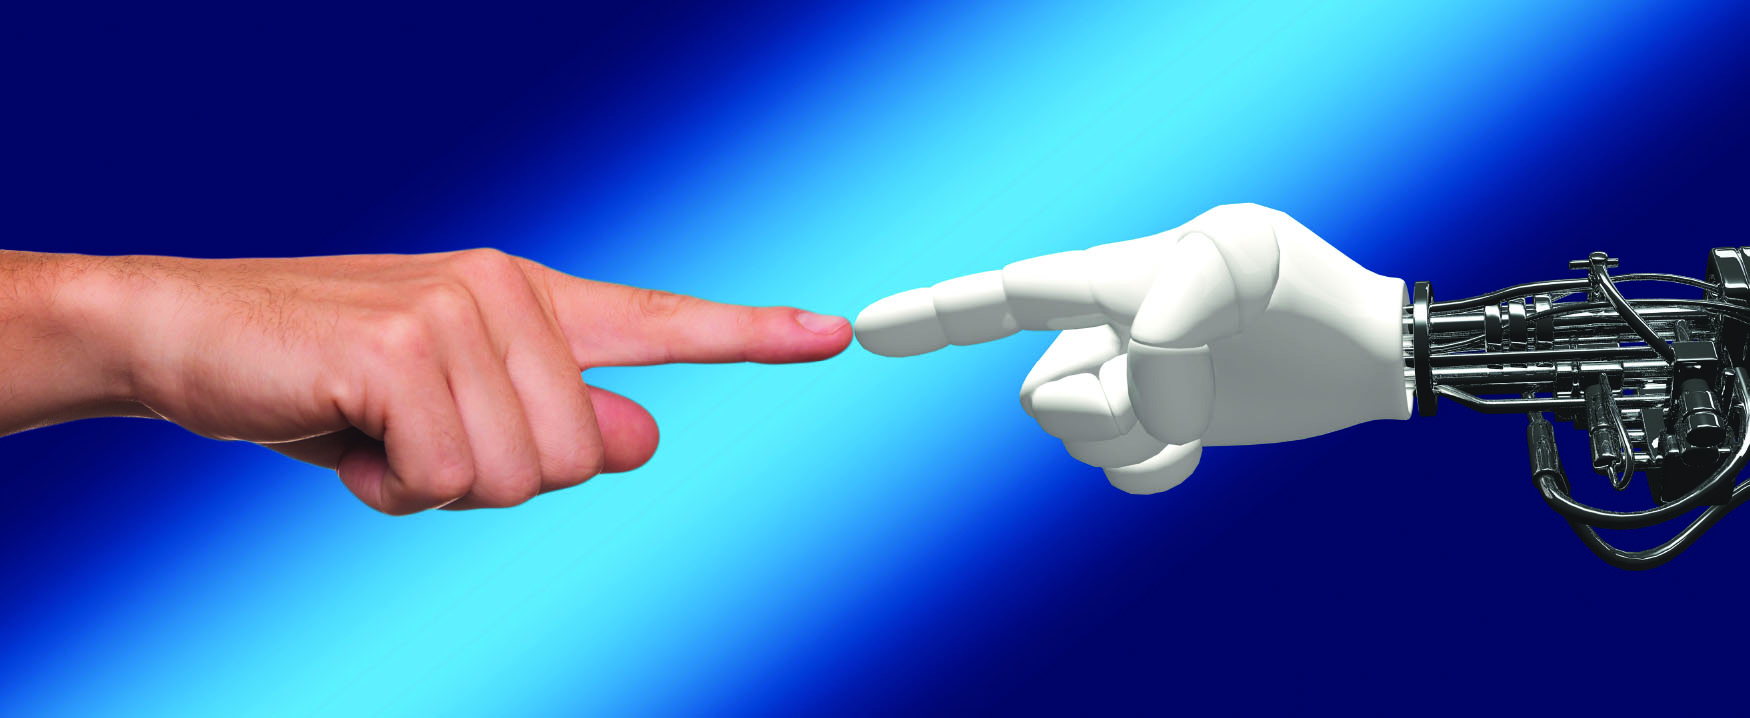 Esta imagem mostra uma mão humana à esquerda e uma mão robótica à direita. Seus dedos indicadores estão se tocando no meio.